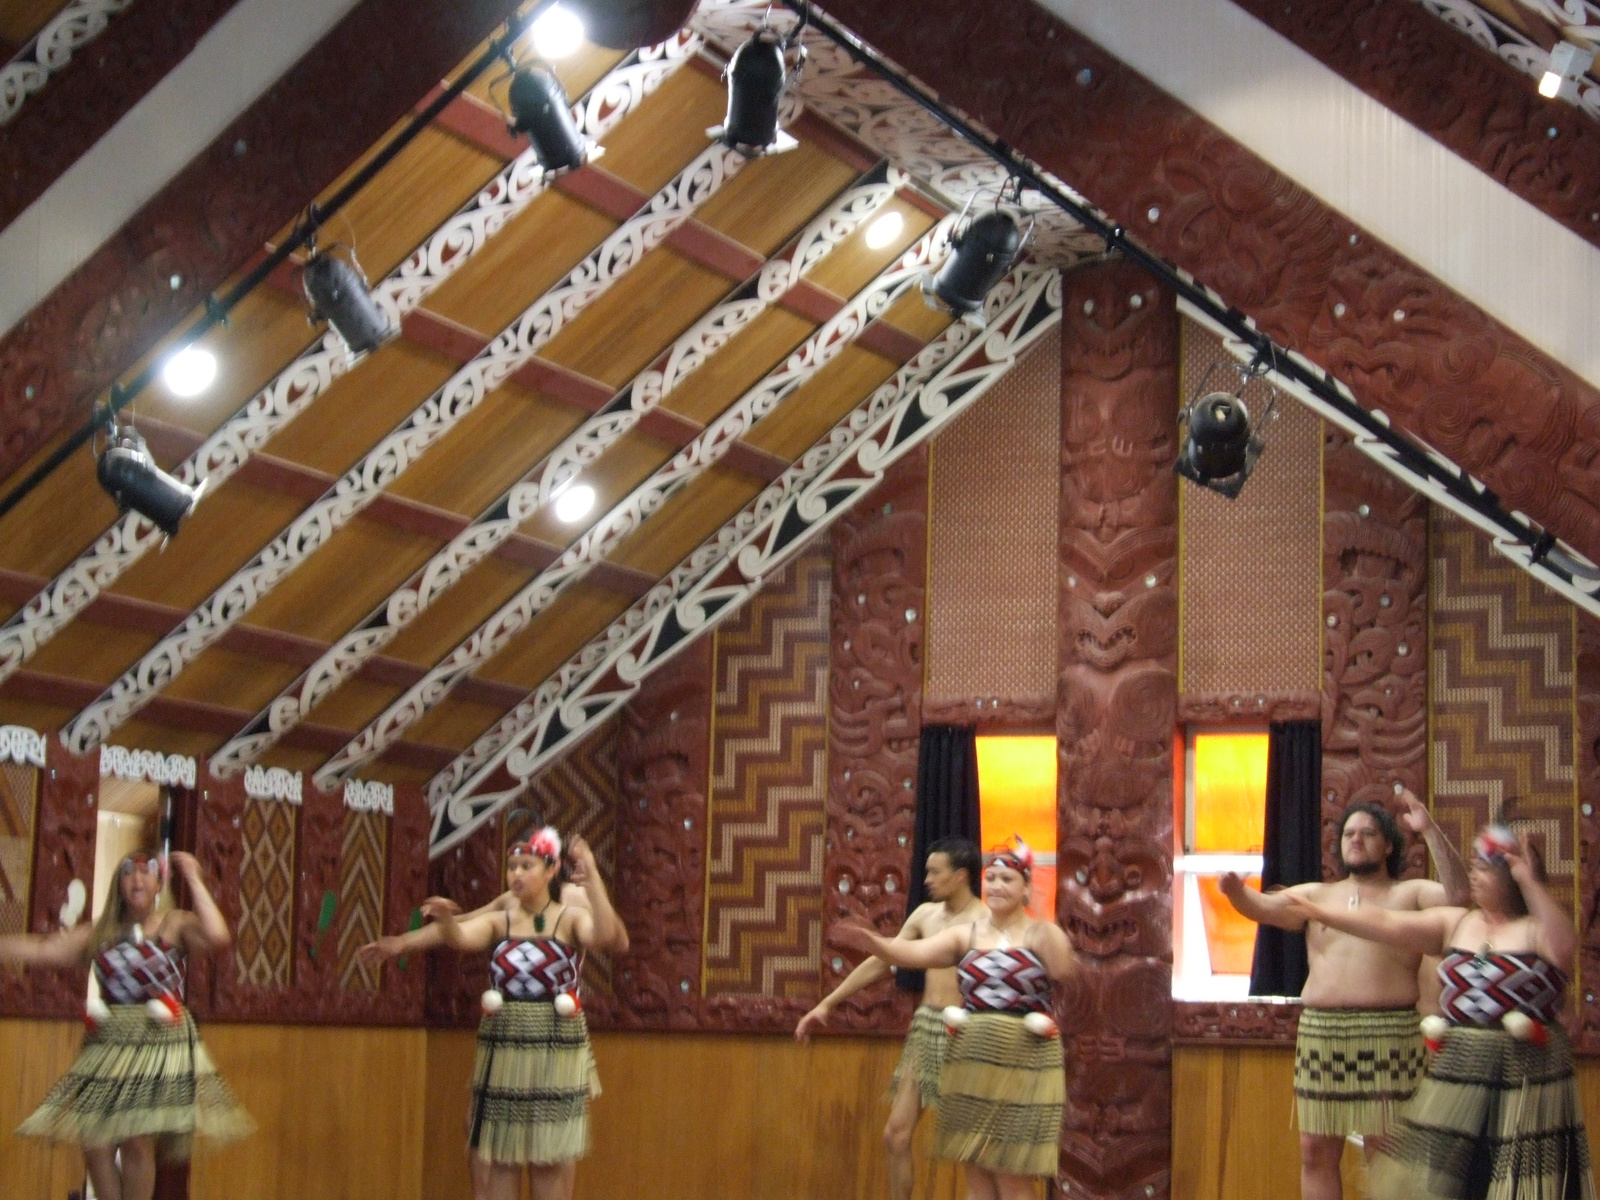 Ezek a maorik homályosra táncolták a képet